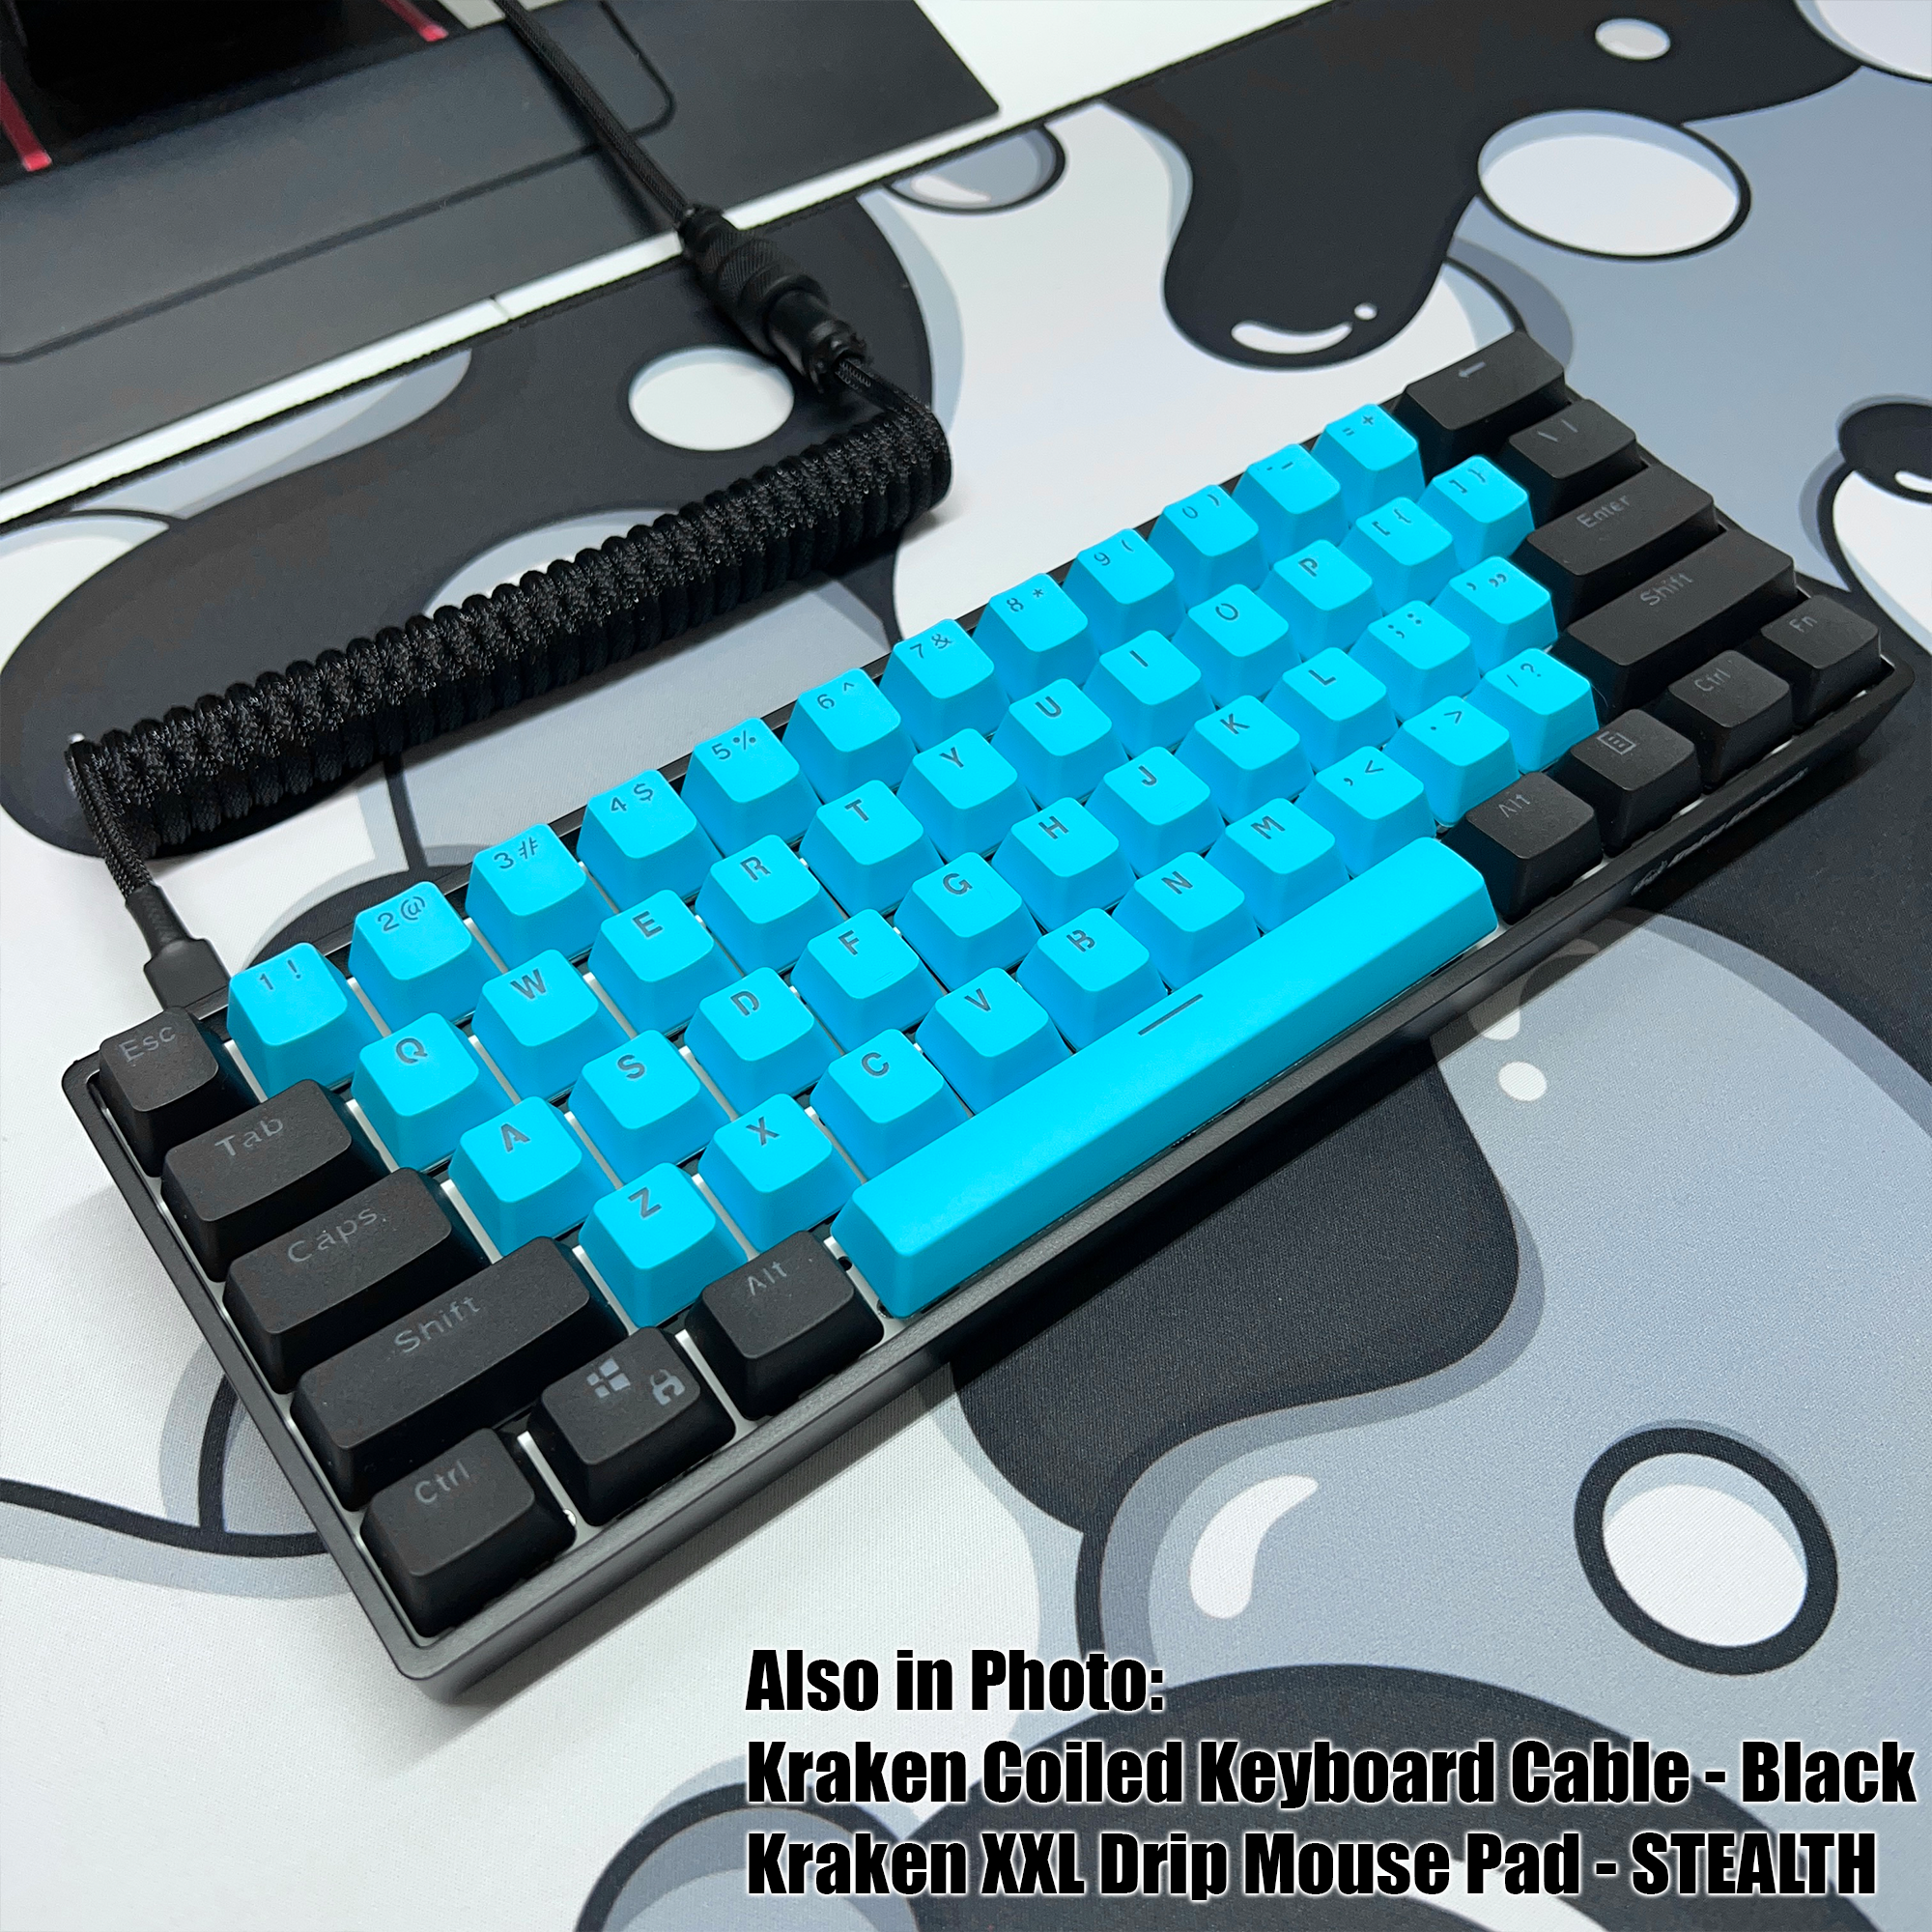 Buy Kraken Keyboards with Best Offers